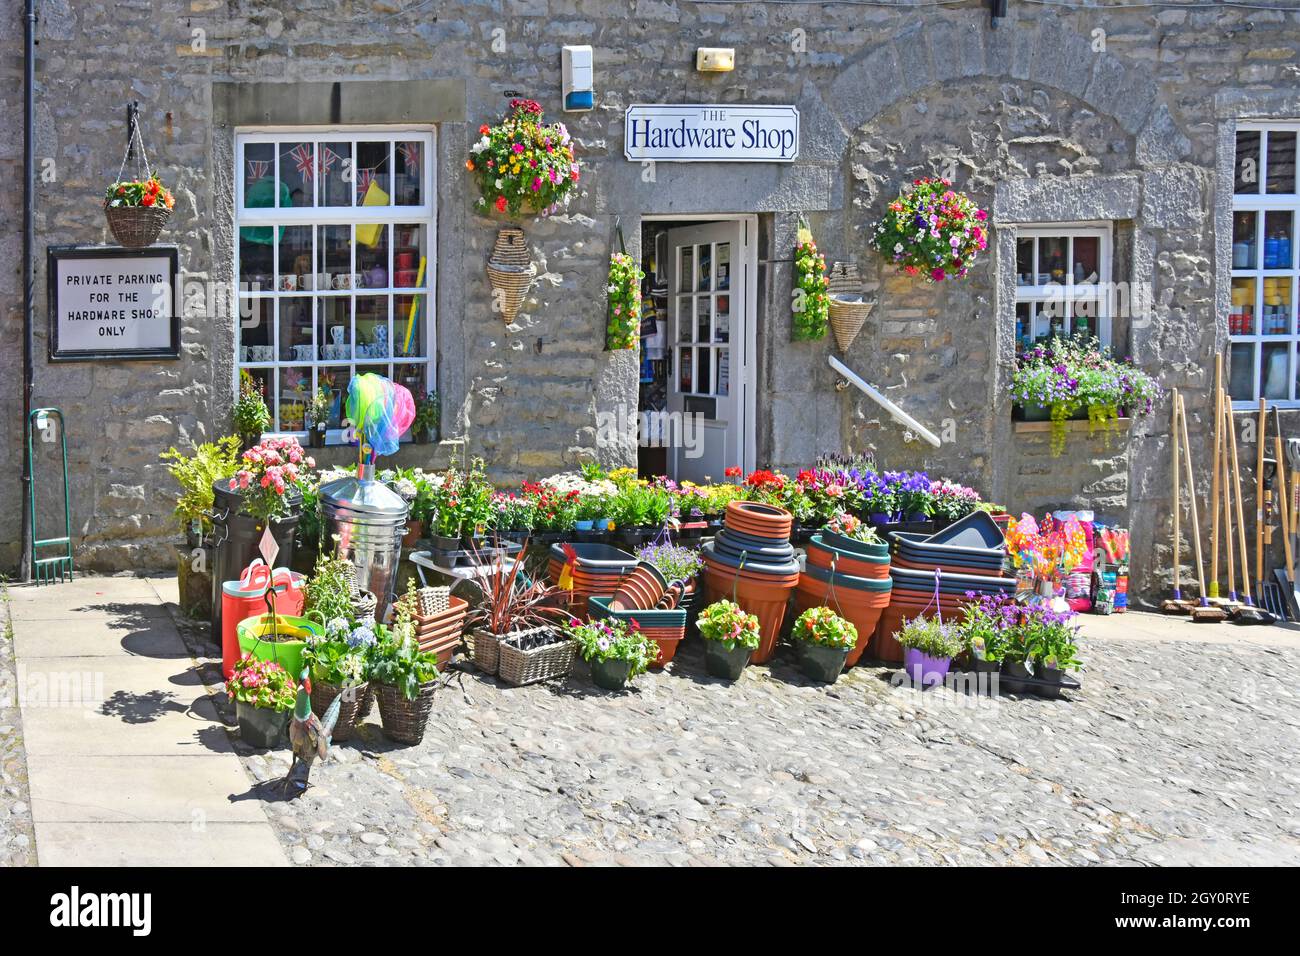 Sommertime Topf gewachsen Sommer Blumen & Gartenartikel außerhalb Steinwand Eisenwaren Einzelhandel Geschäft Grassington Wharfedale Yorkshire England Stockfoto